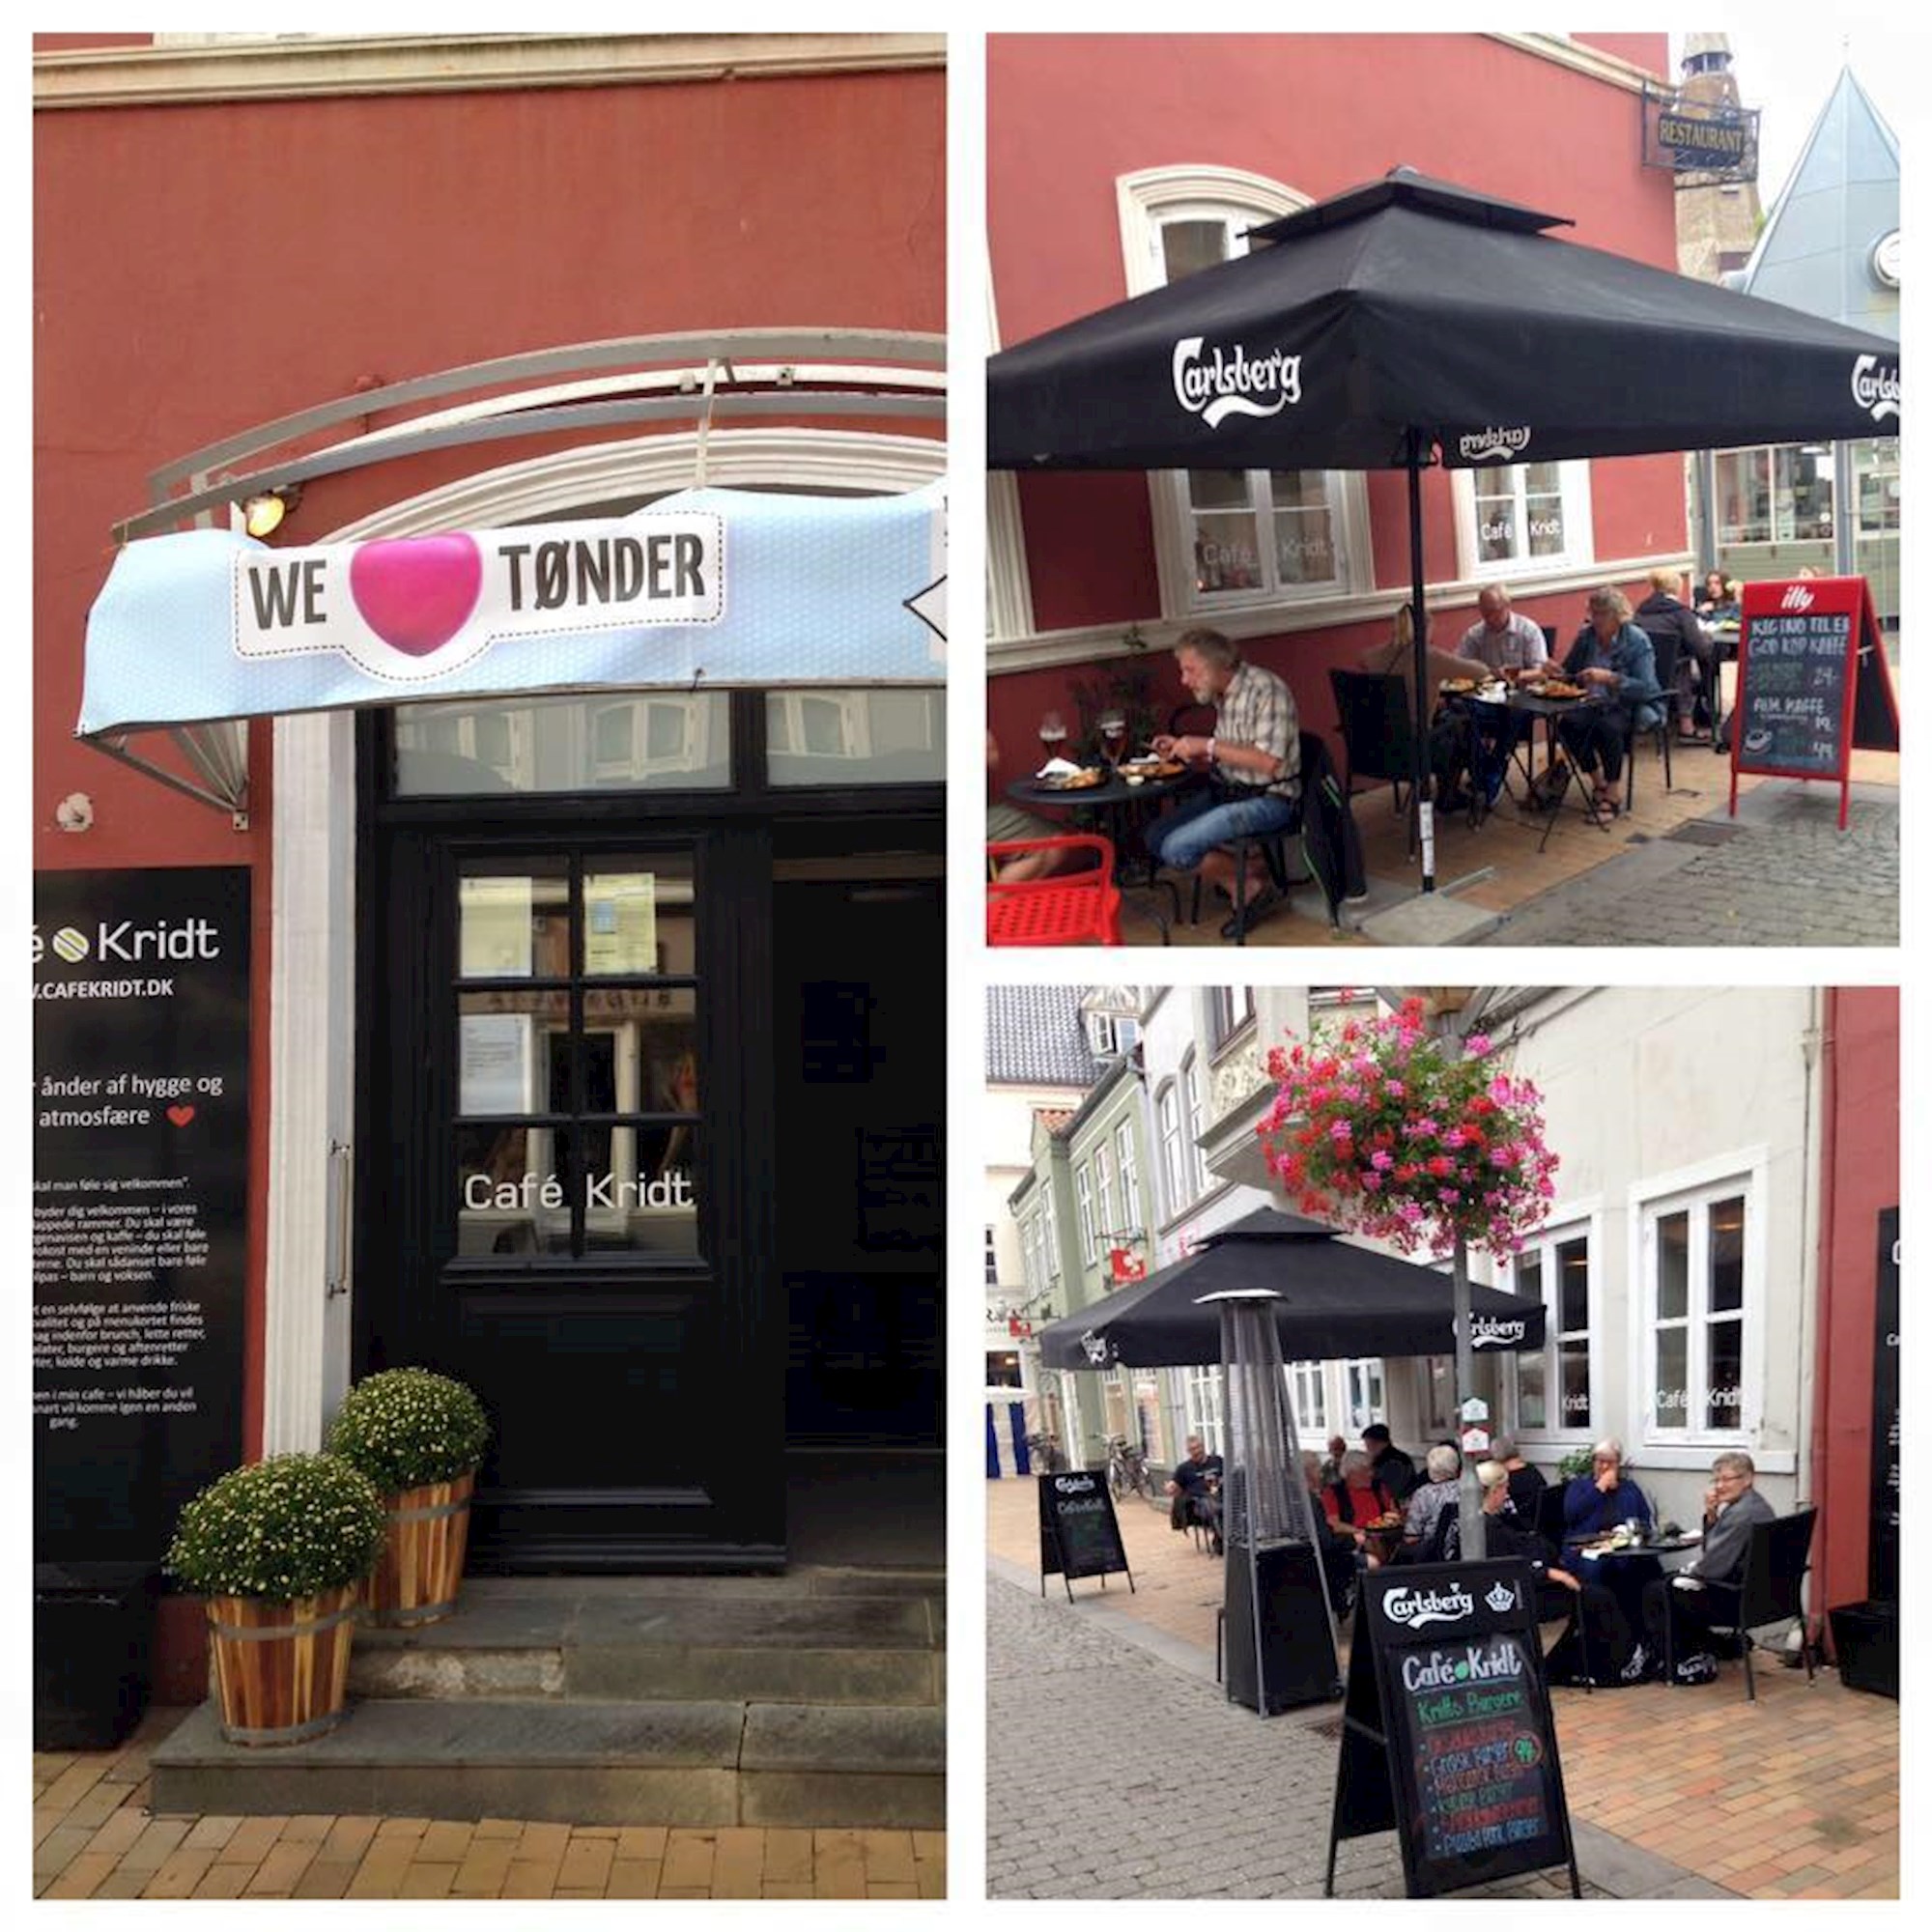 Café Kridt | Plan your visit in Tønder with Discover Denmark